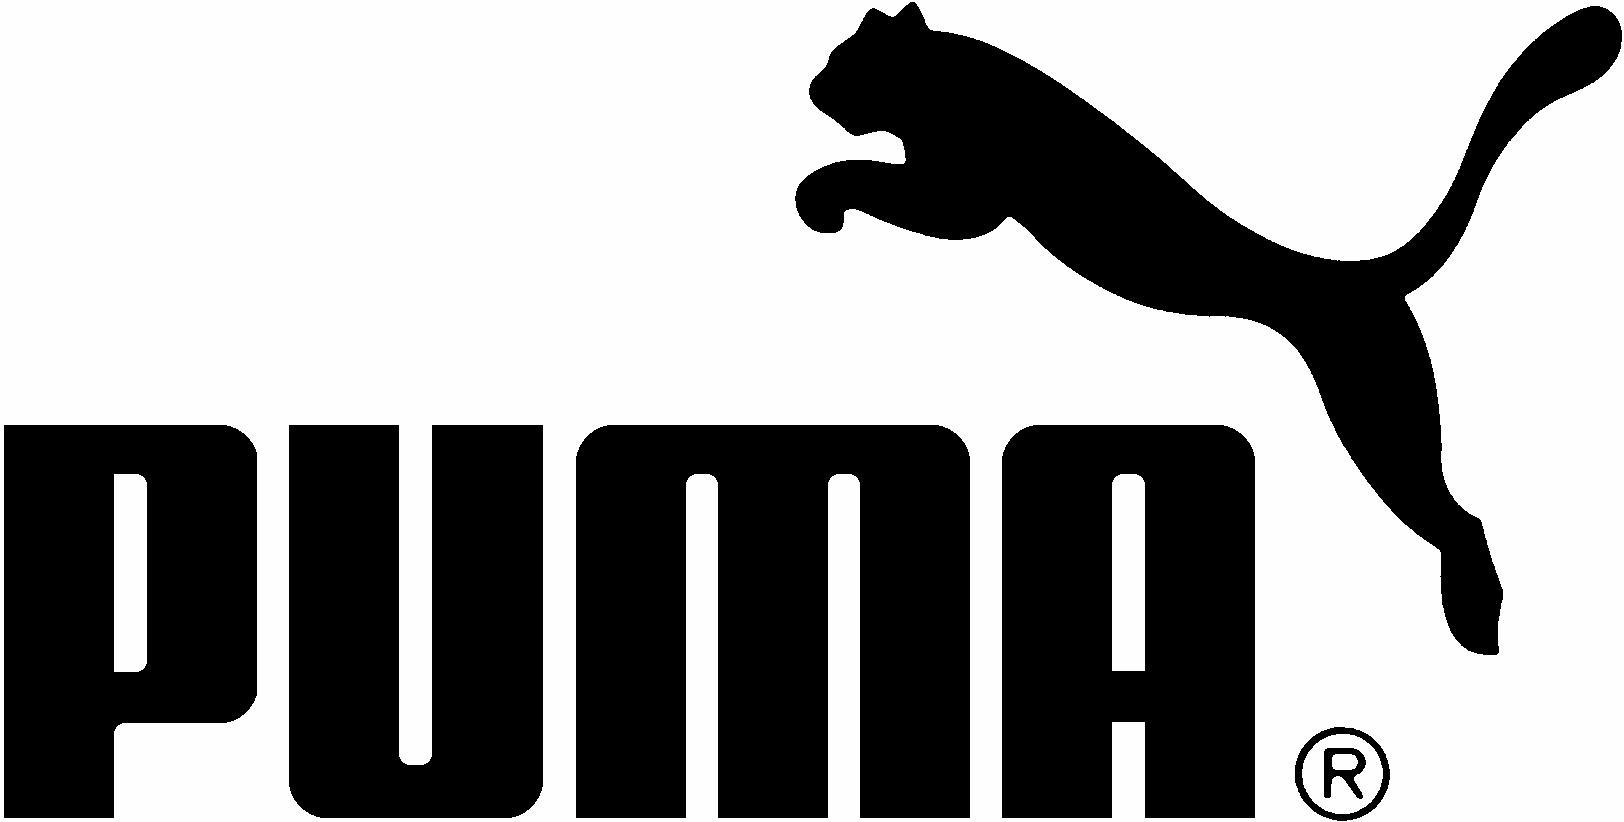 logo_puma